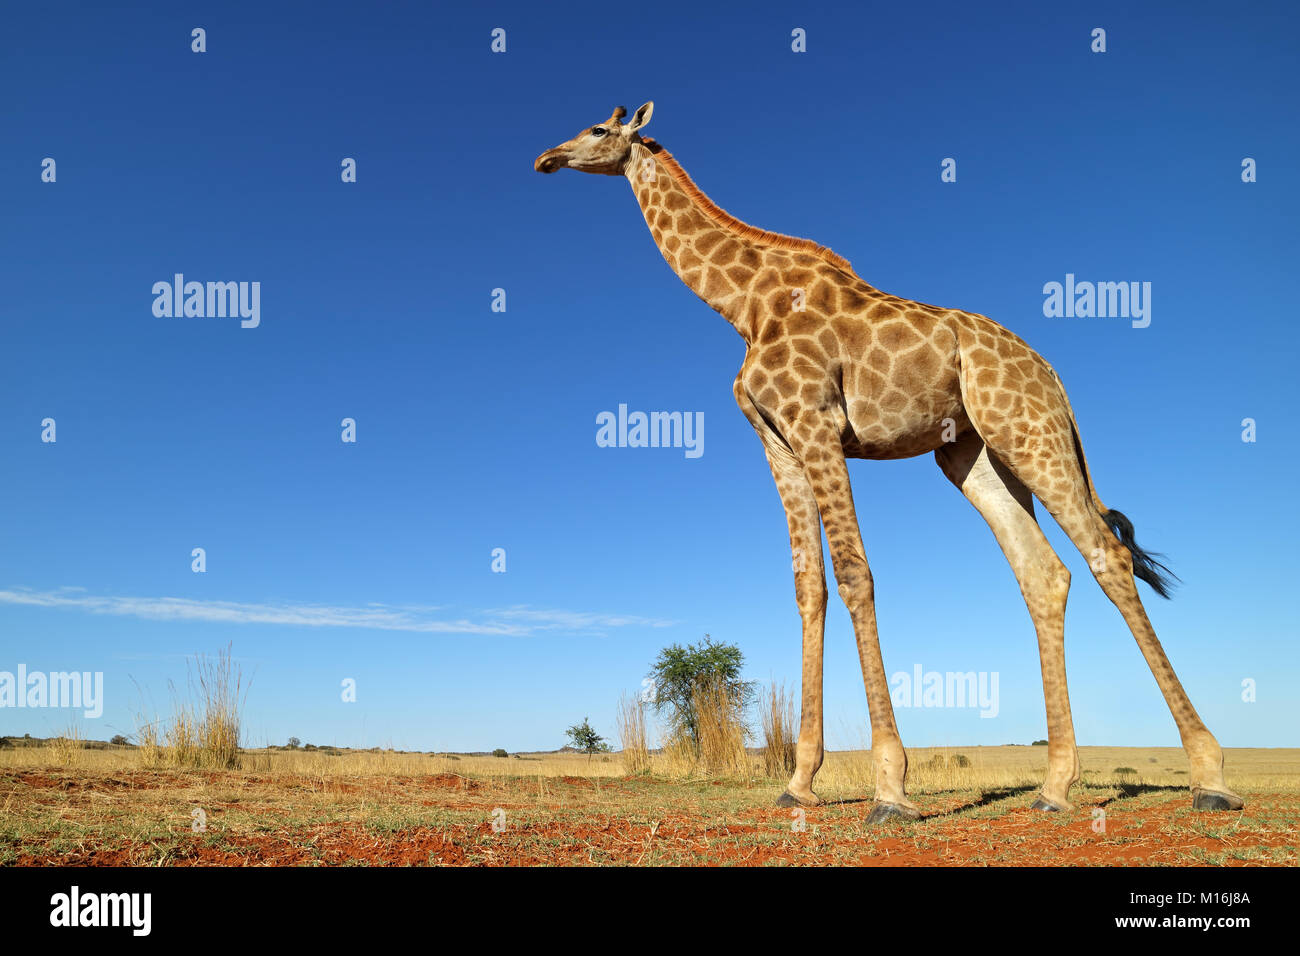 Ángulo de visión baja de una jirafa (Giraffa camelopardalis) contra un cielo azul, Sudáfrica Foto de stock